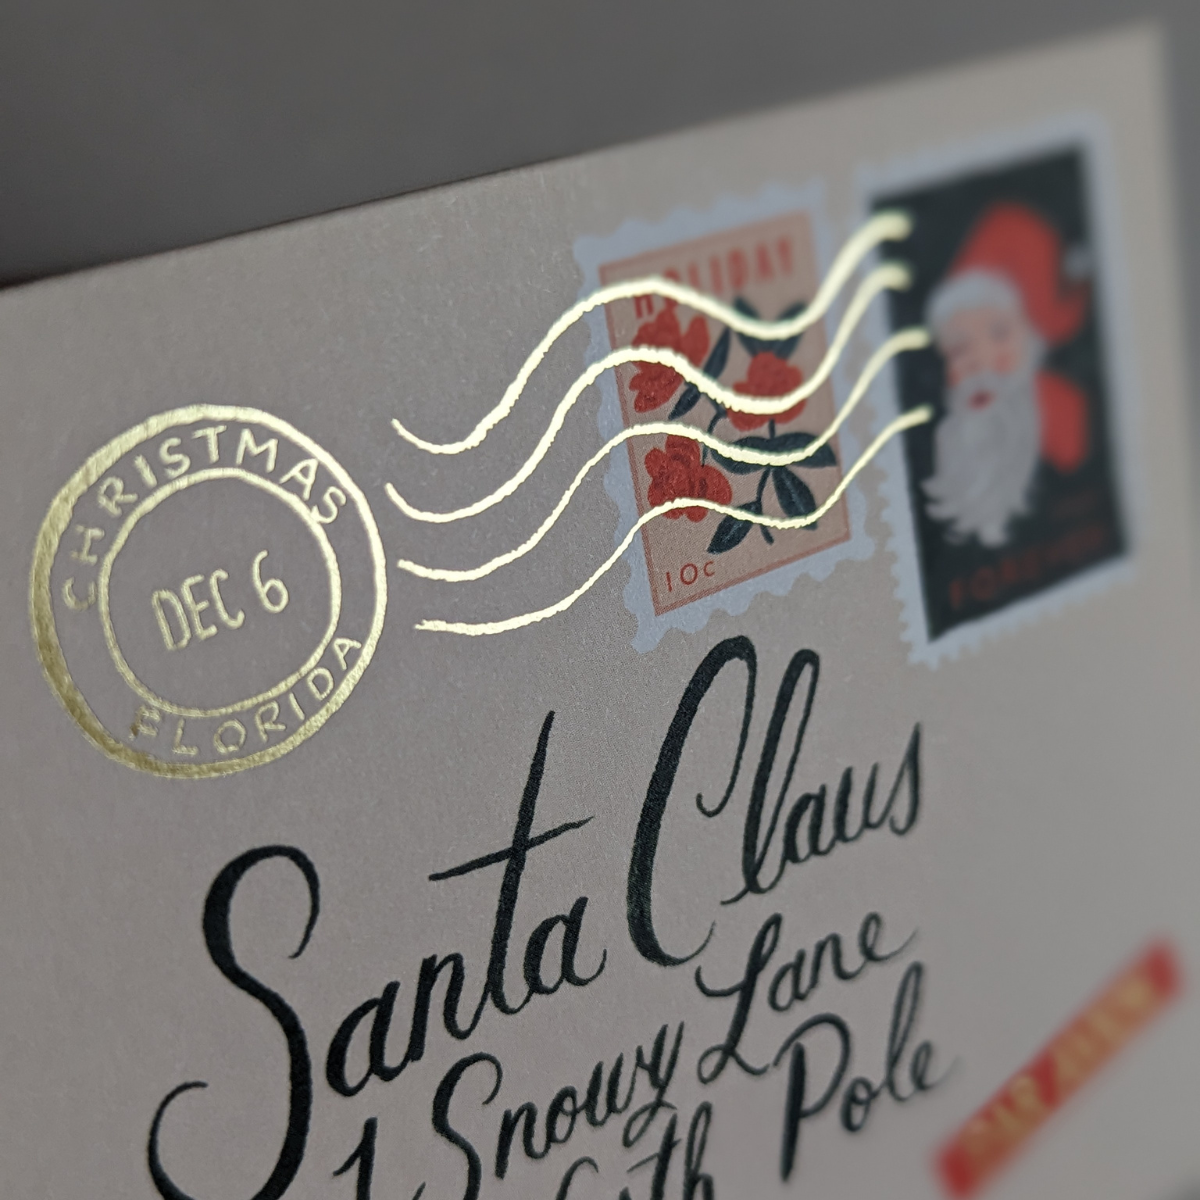 Les jolis timbres et le cachet de la poste estampé à la feuille d'or sont des détails méticuleusement conçus pour évoquer la magie de Noël.